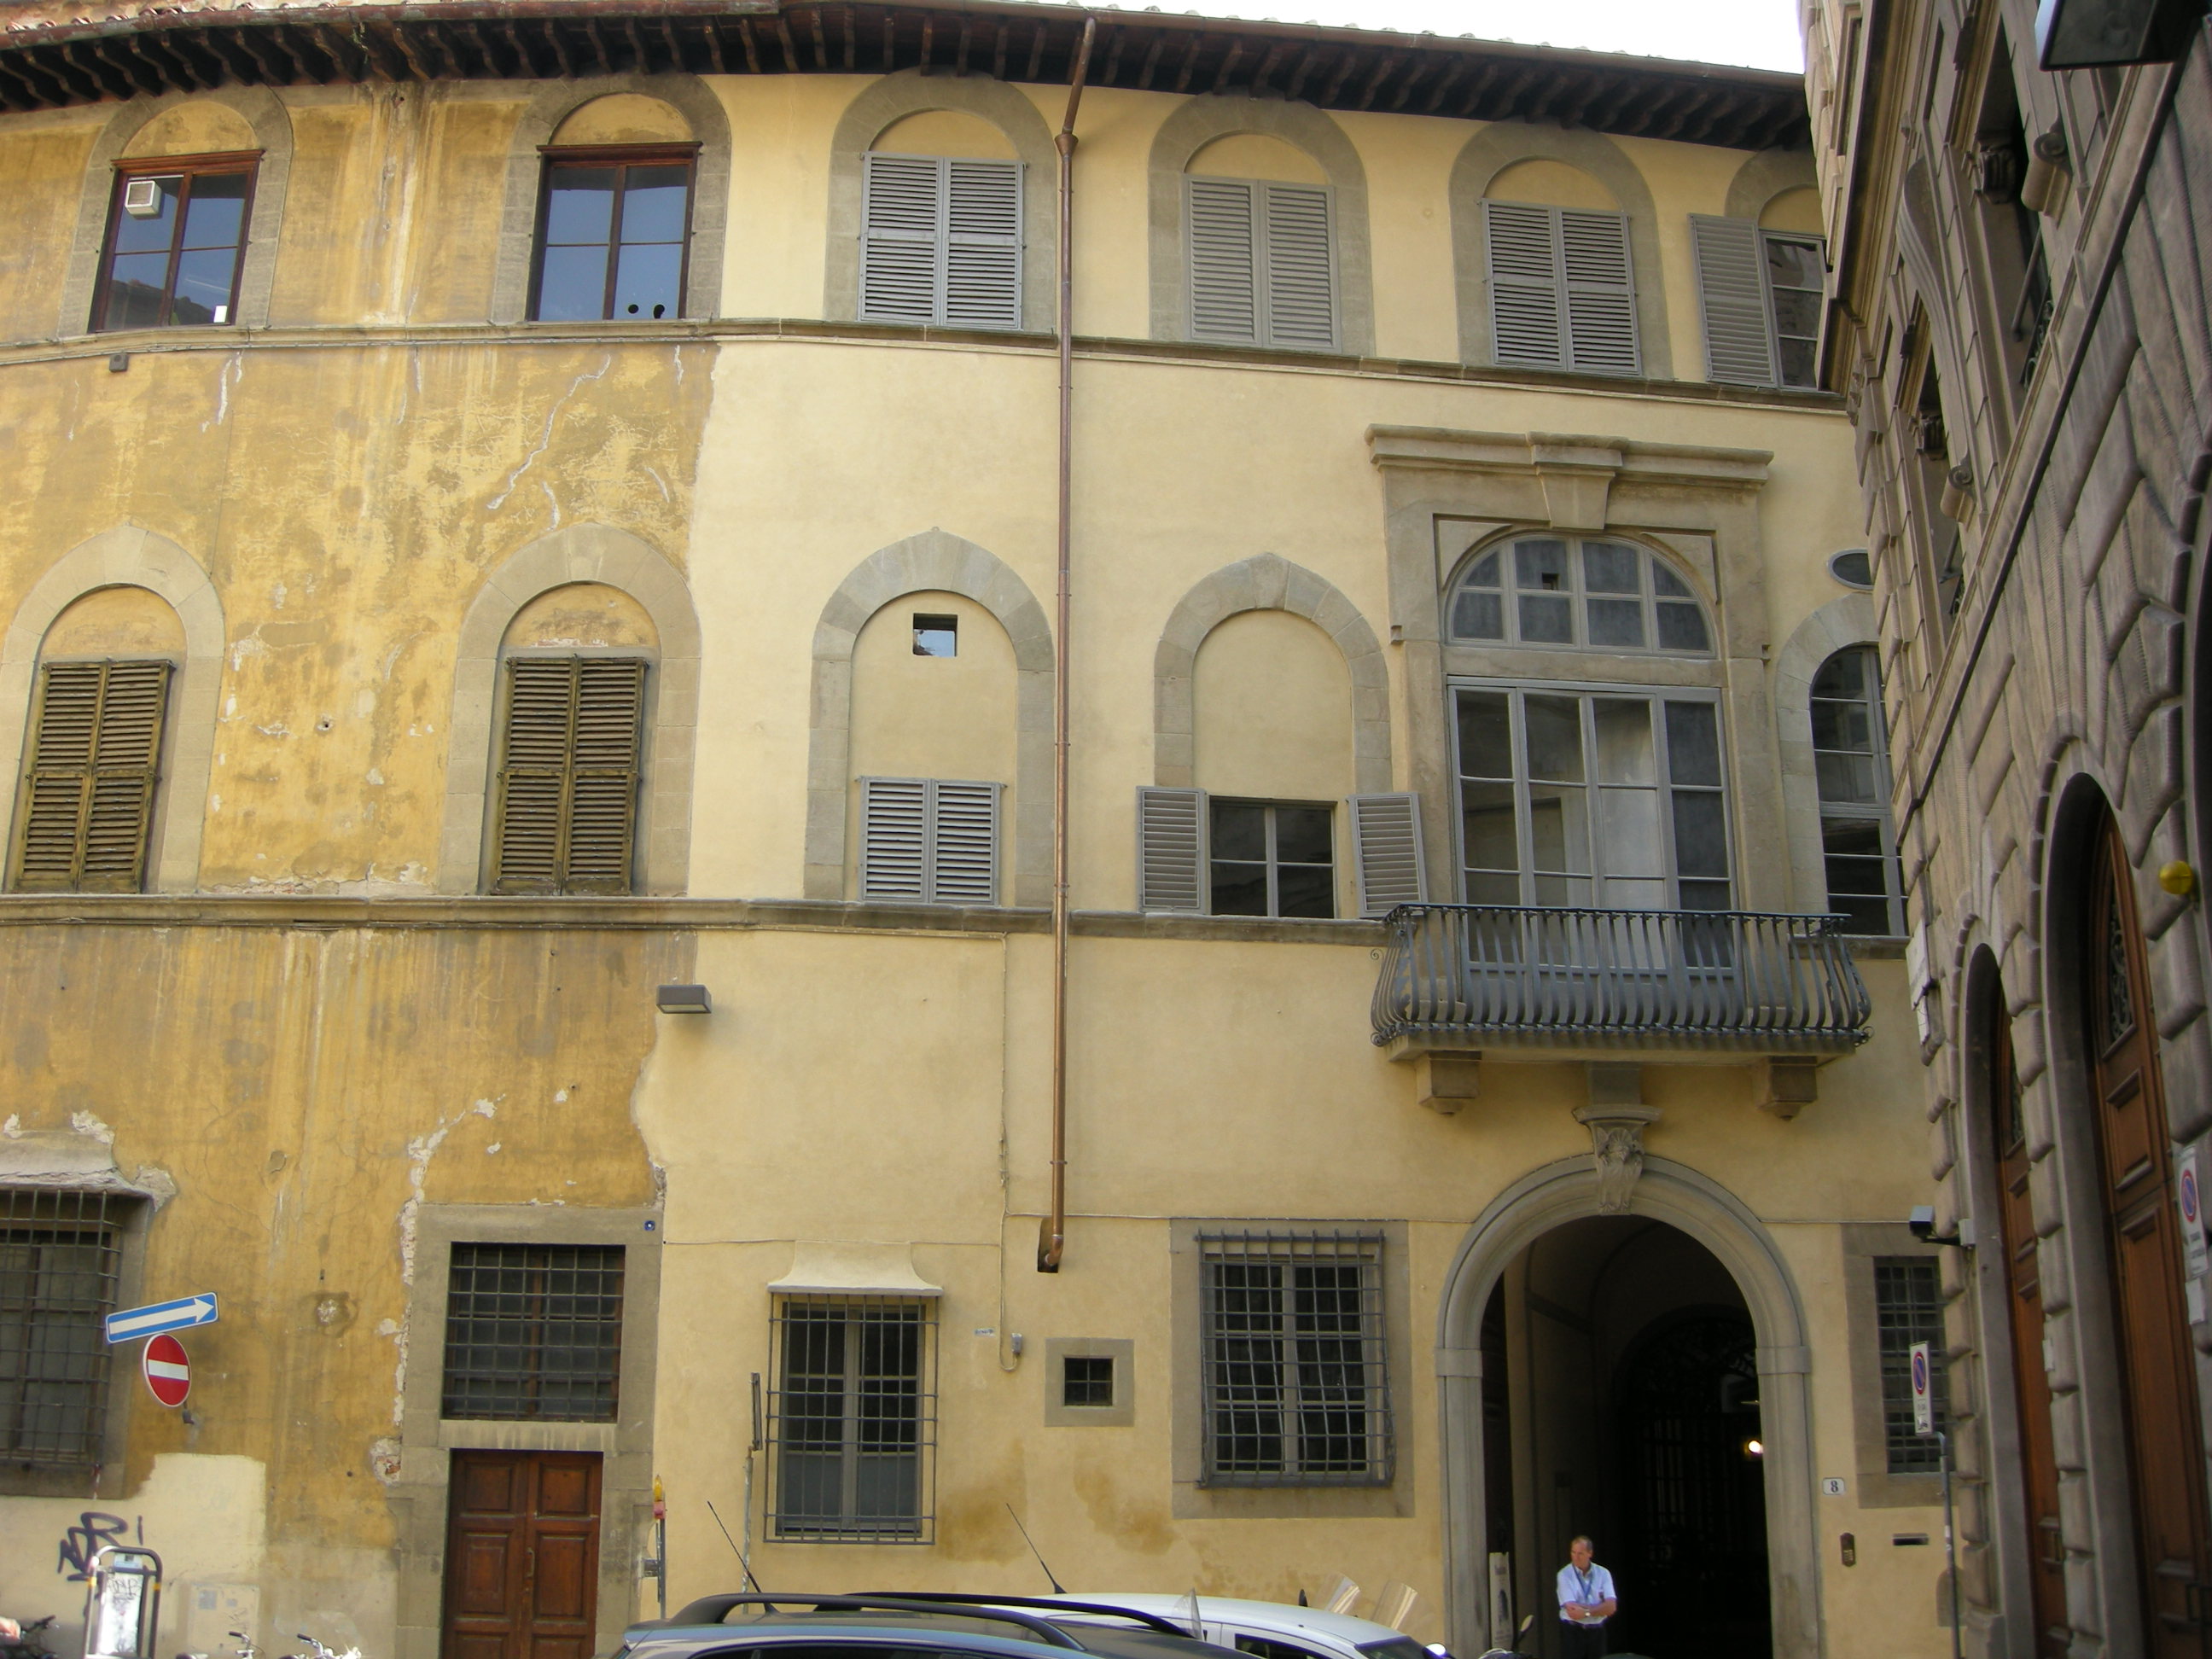 Palazzo Martelli - Wikipedia